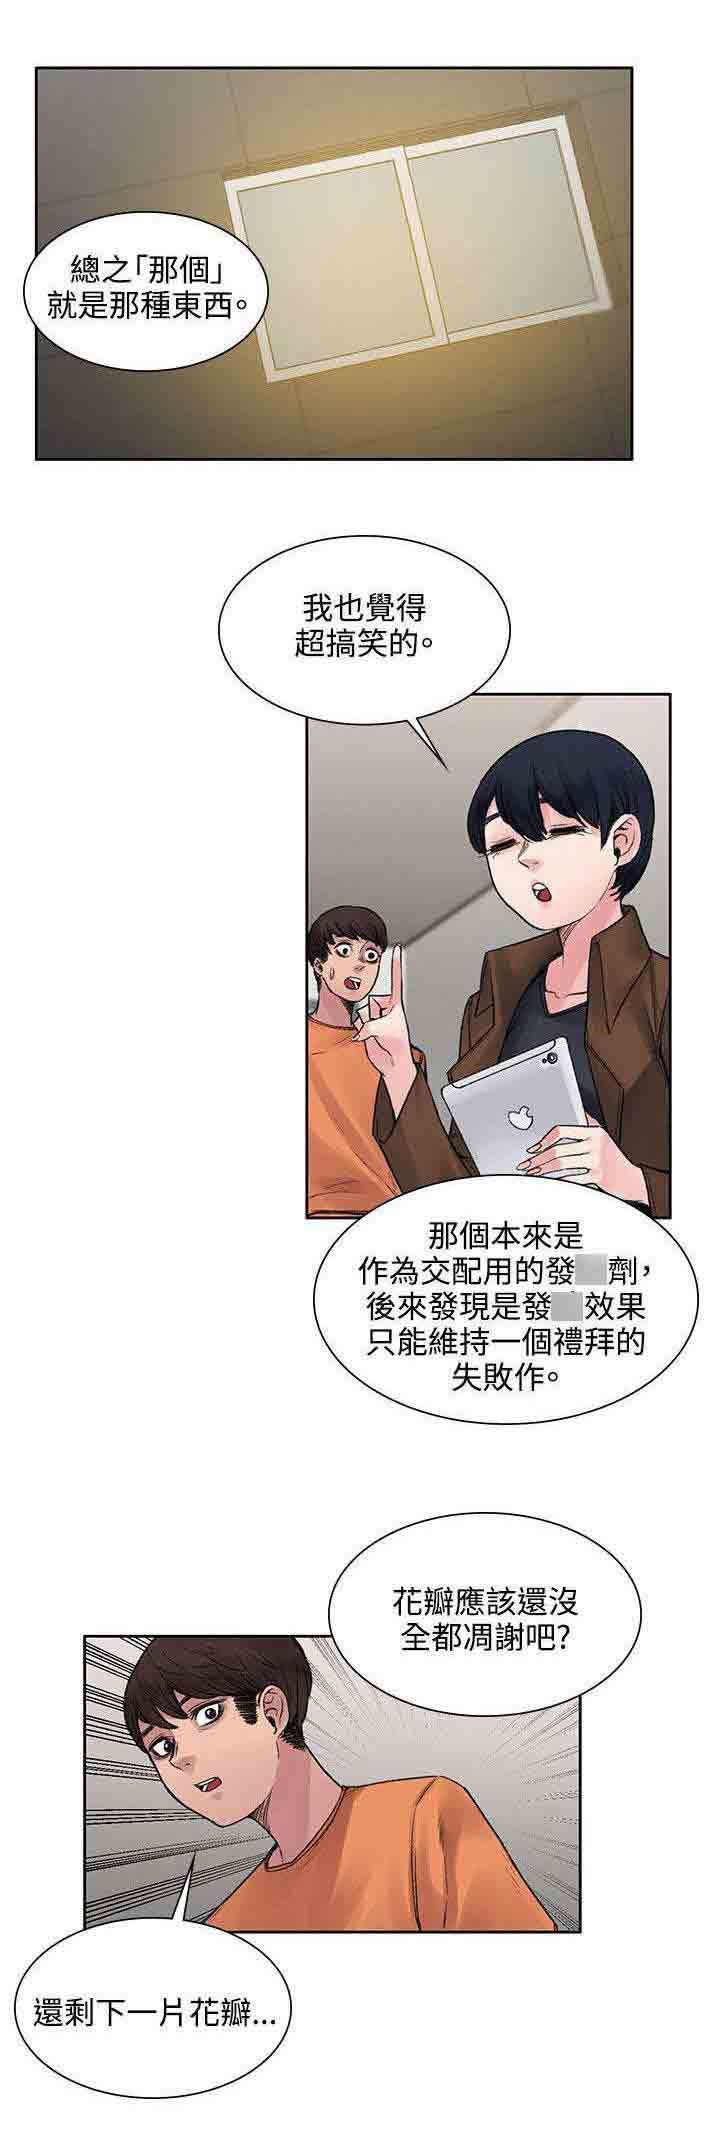 韩国污漫画 甜蜜的香氣 第31话解毒的条件 3